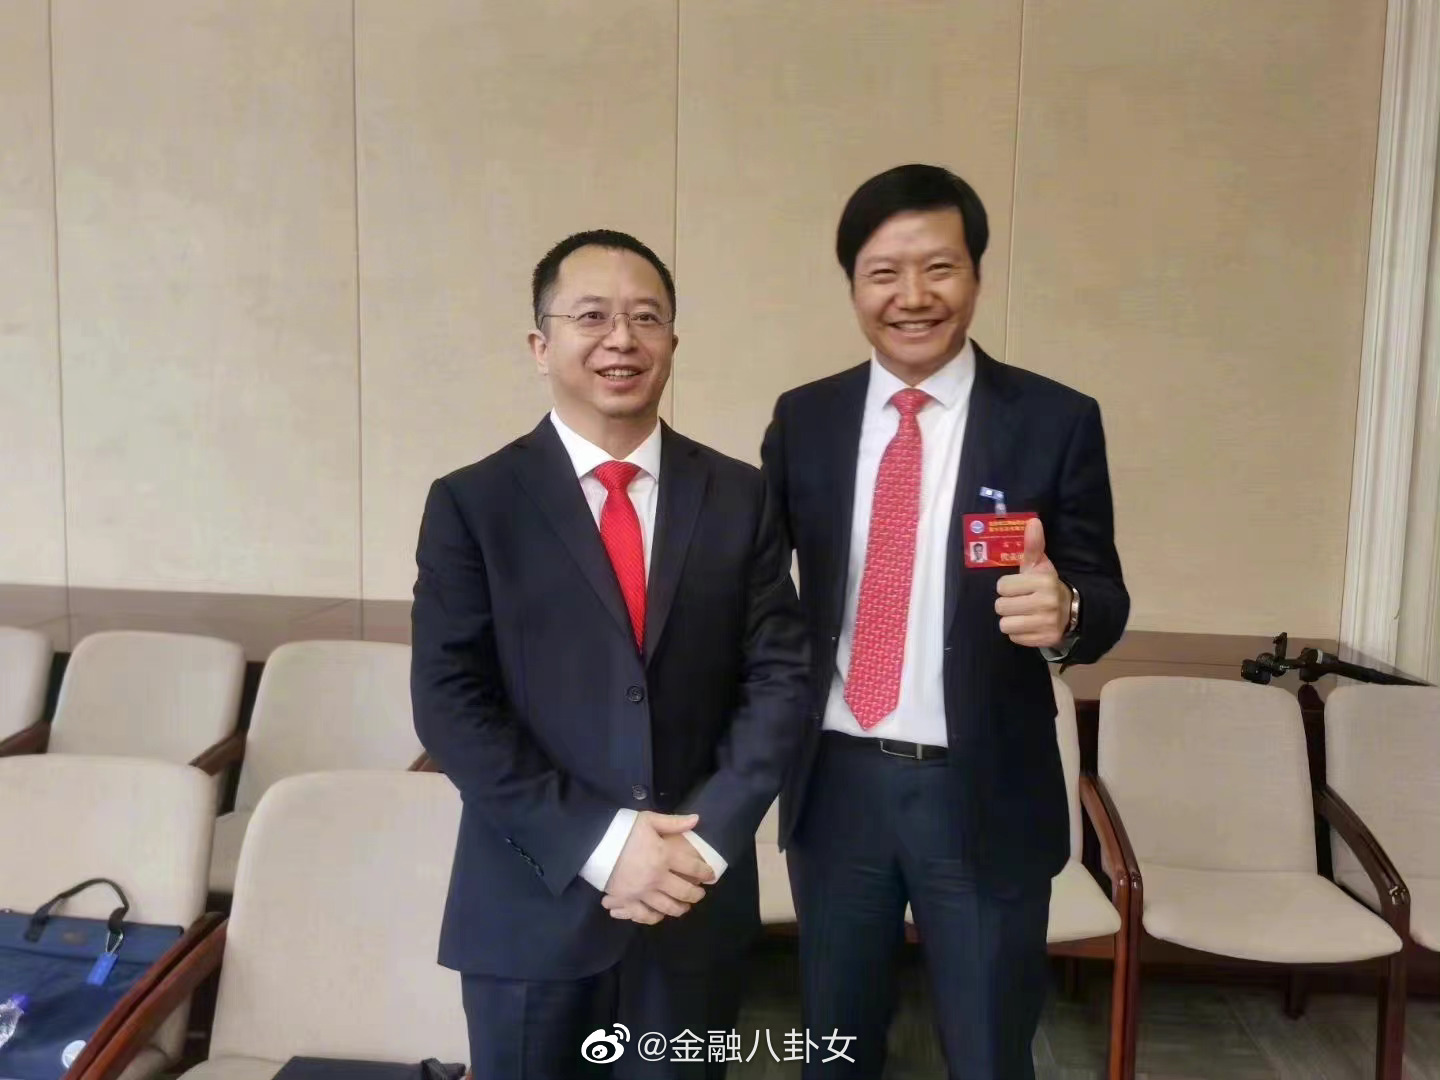 中国品牌价值网&大观网-周鸿祎 中国互联网安全企业360集团创始人兼CEO